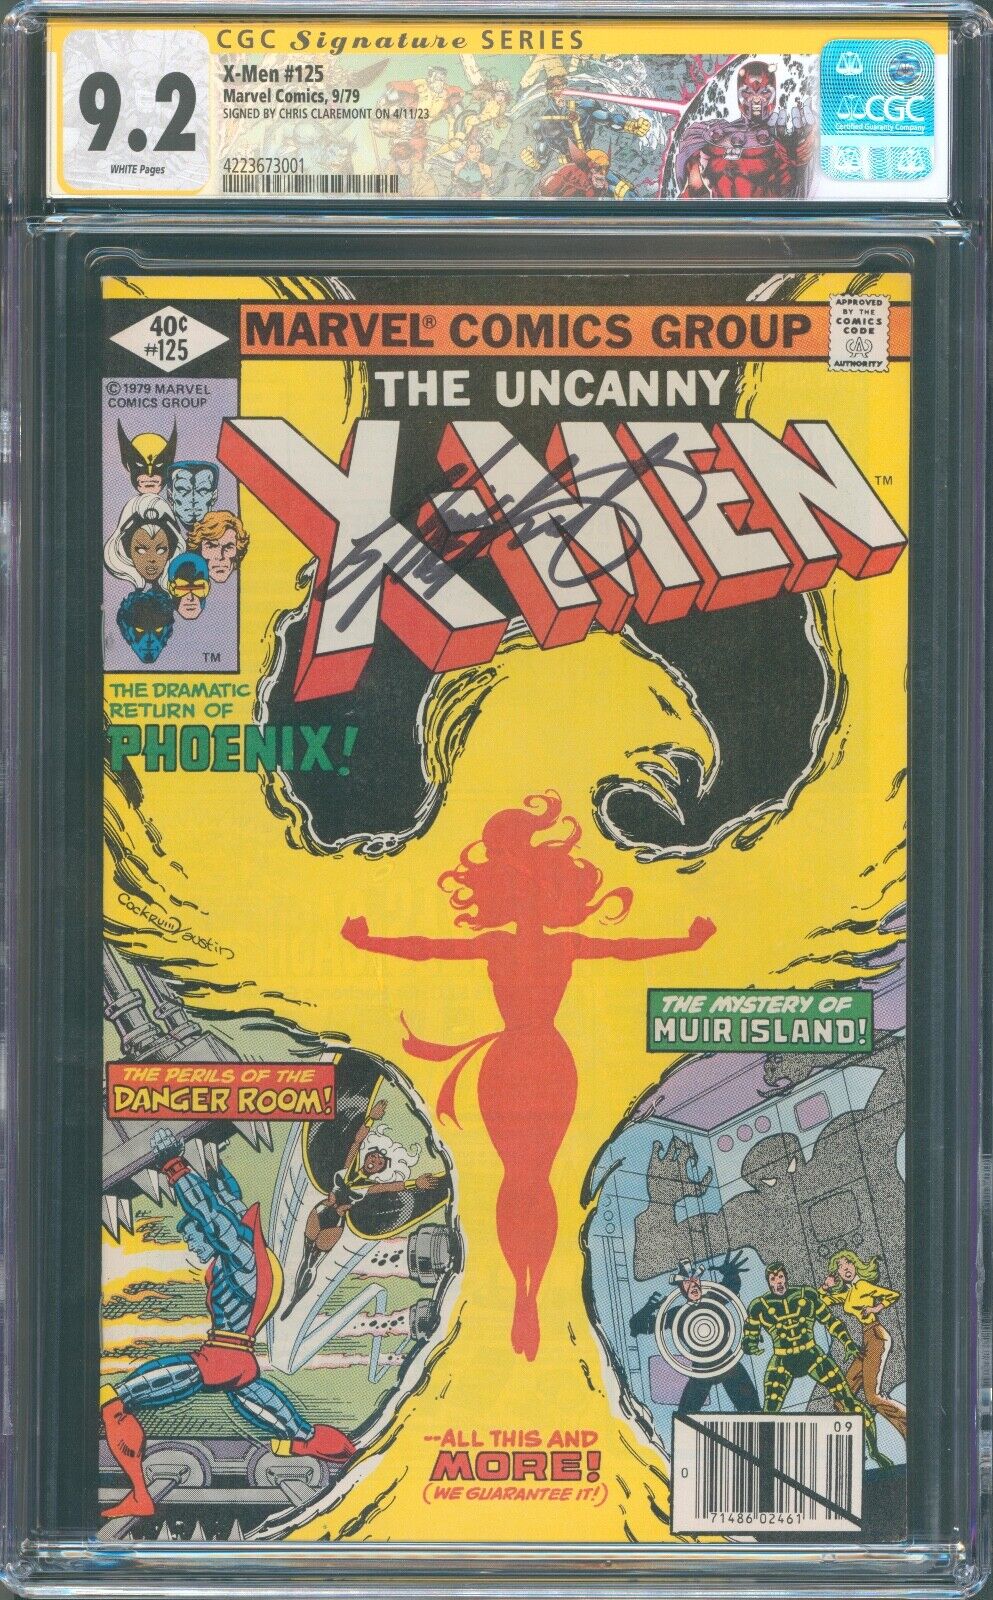 X-Men #125, Marvel (1979), CGC 9.2 (NM-) Signature Series - Chris Claremont